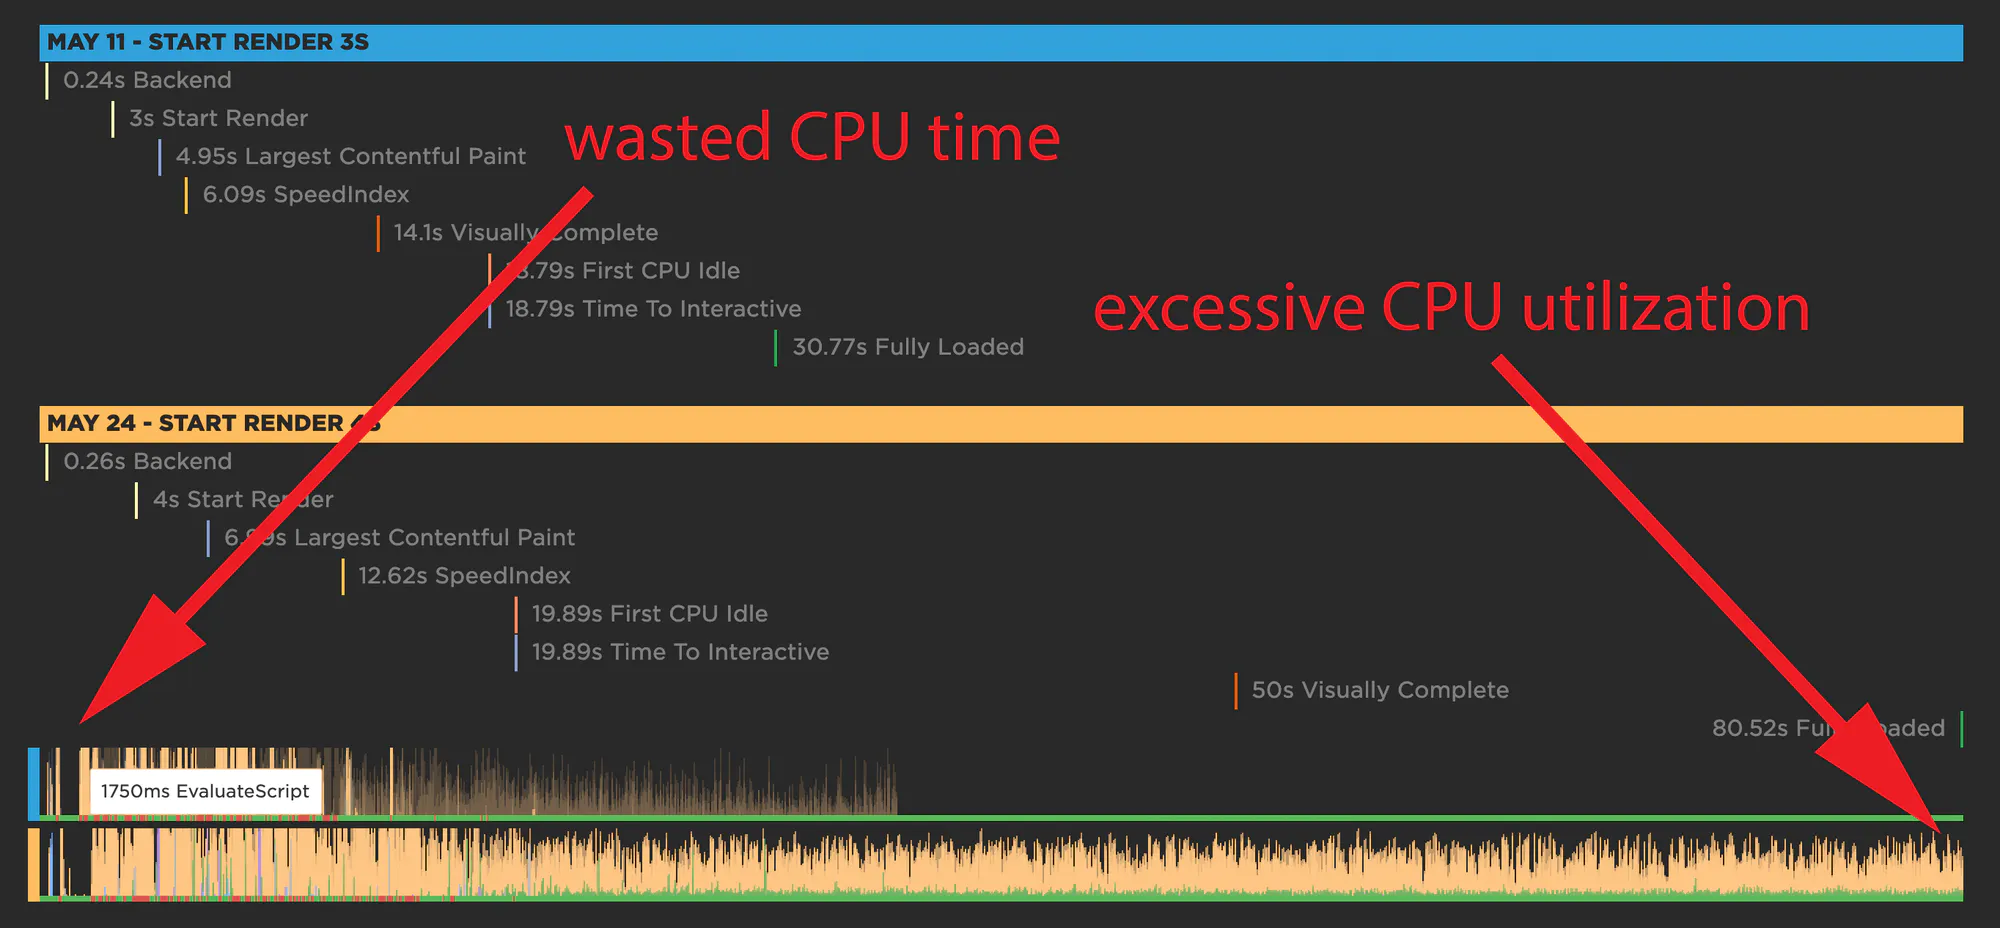 Comparing CPU utilization